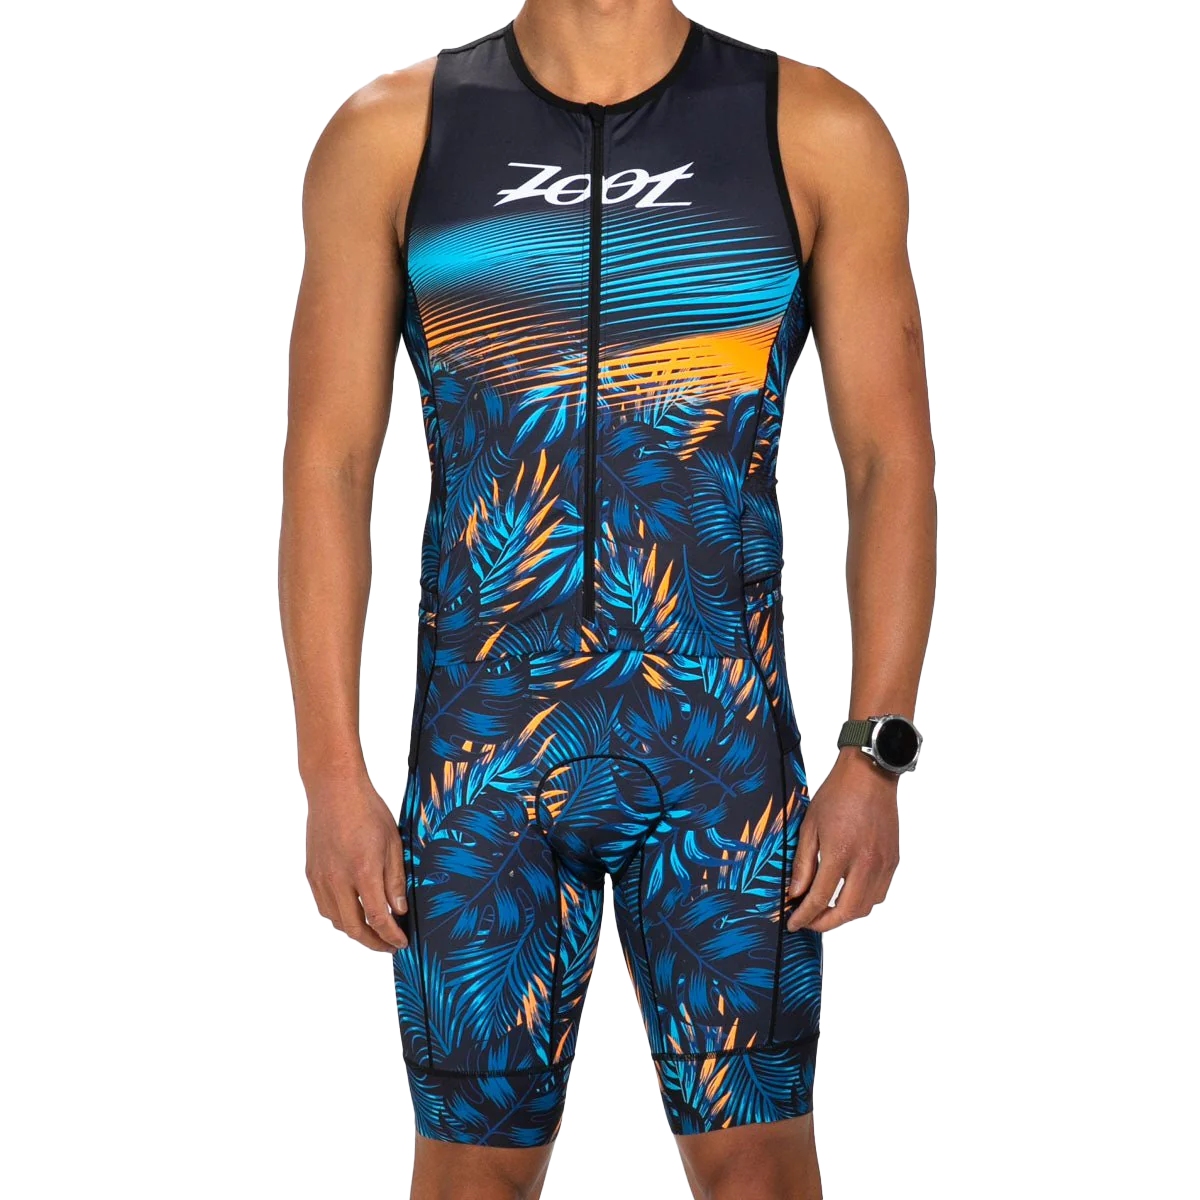 Produktbild von ZOOT LTD Full Zip Ärmelloser Triathlonanzug Herren - club aloha